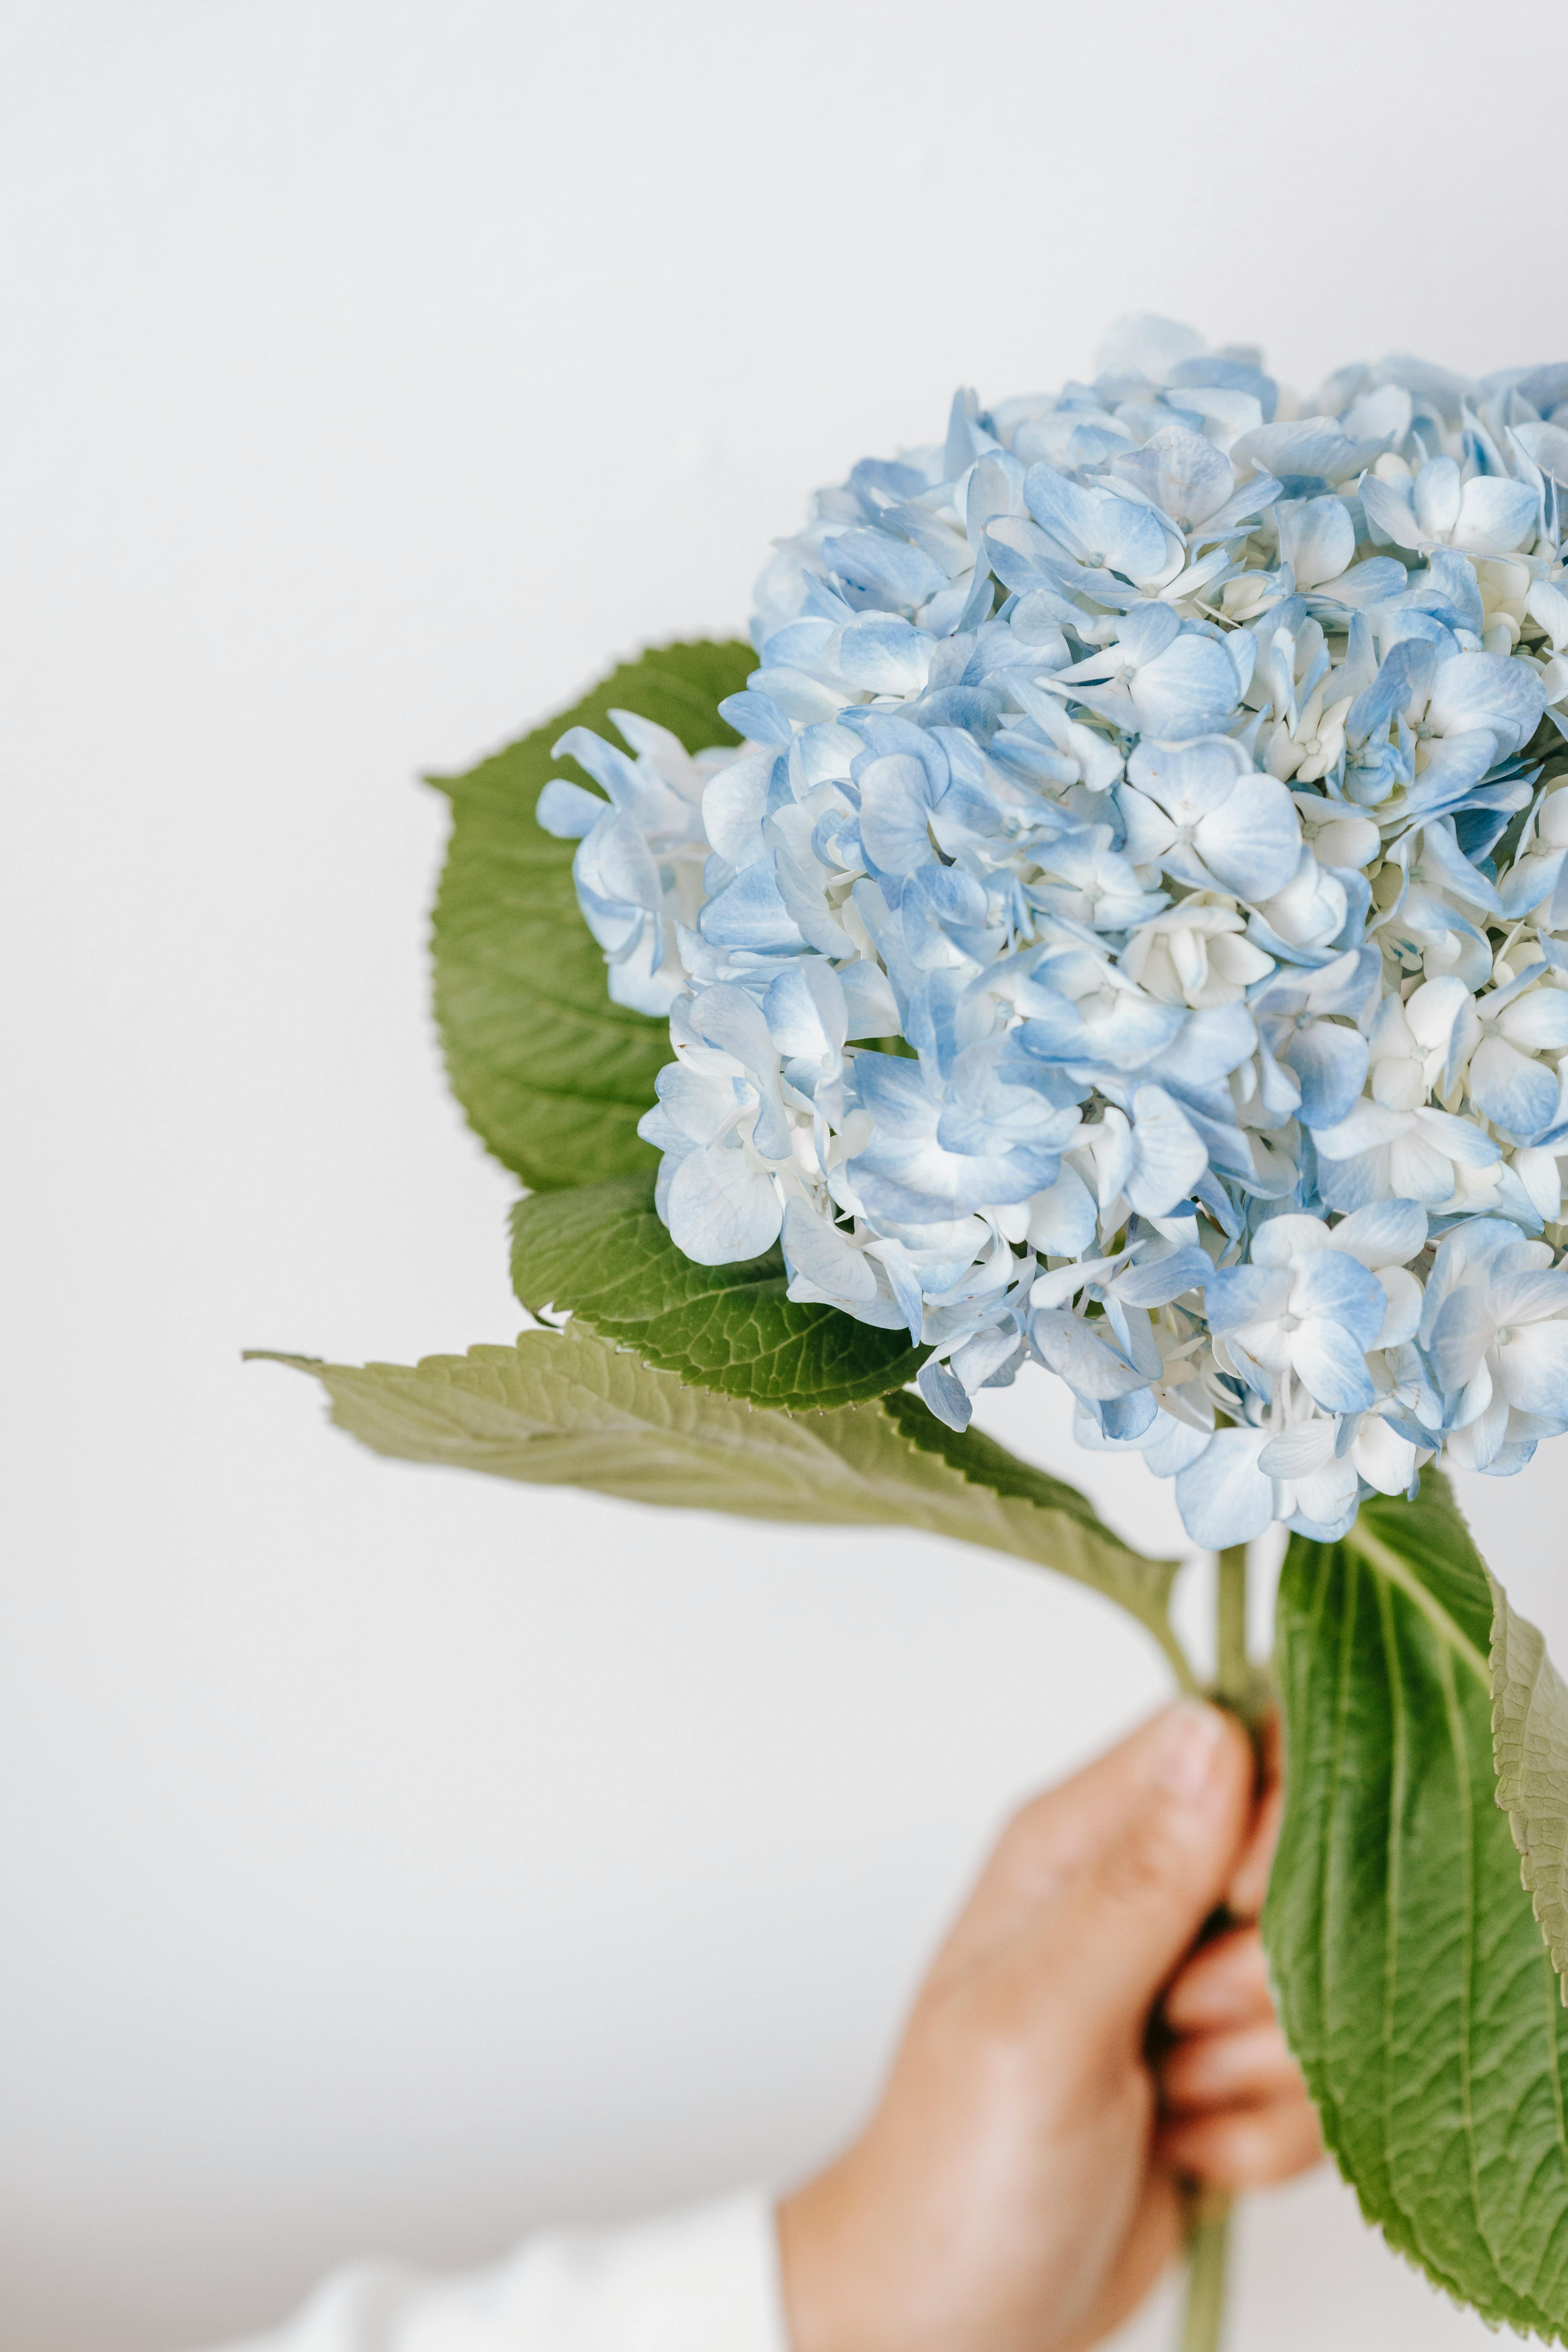 Hoa cẩm tú cầu - một loại hoa lộng lẫy và sang trọng. Nét độc đáo và vẻ đẹp khác biệt của nó sẽ khiến bạn cảm thấy thích thú khi chiêm ngưỡng hình ảnh mang đến cho bạn.